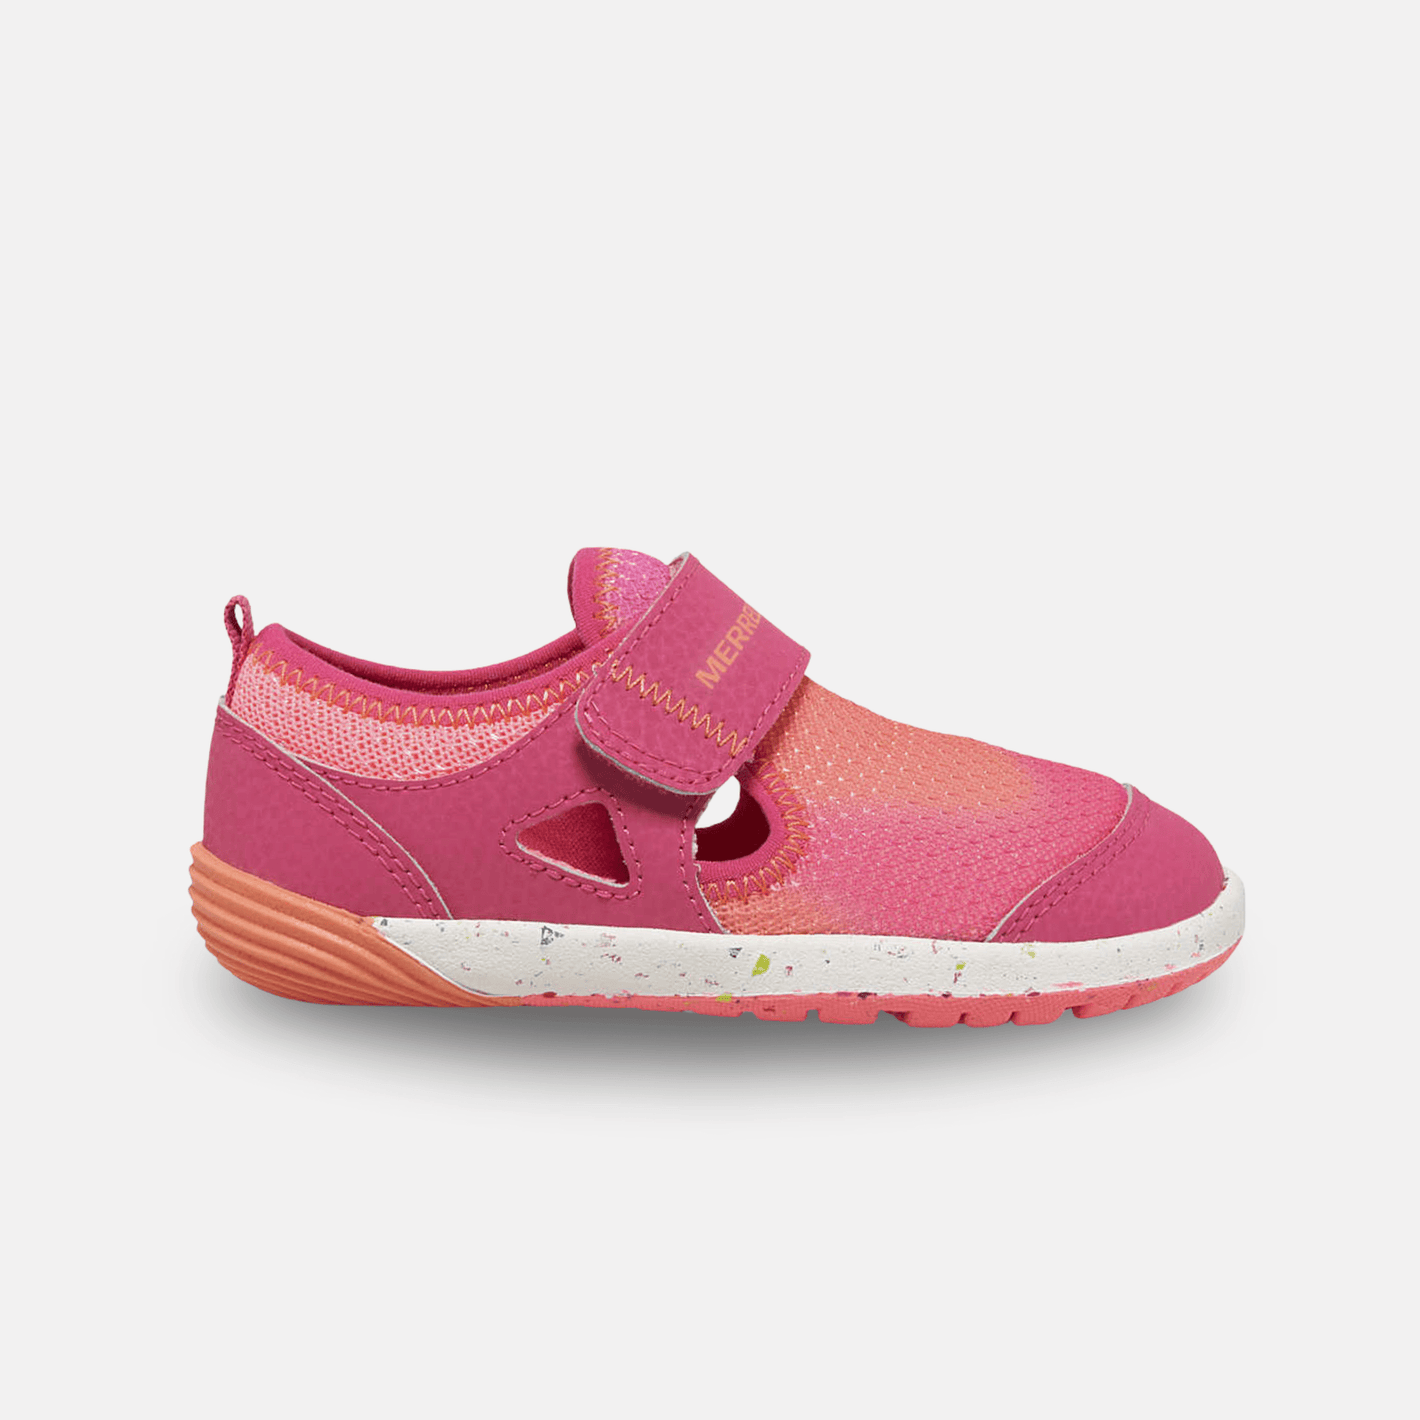 Merrell Sandals Merrell Little Kid's Bare Steps® H2O Pink/Orange